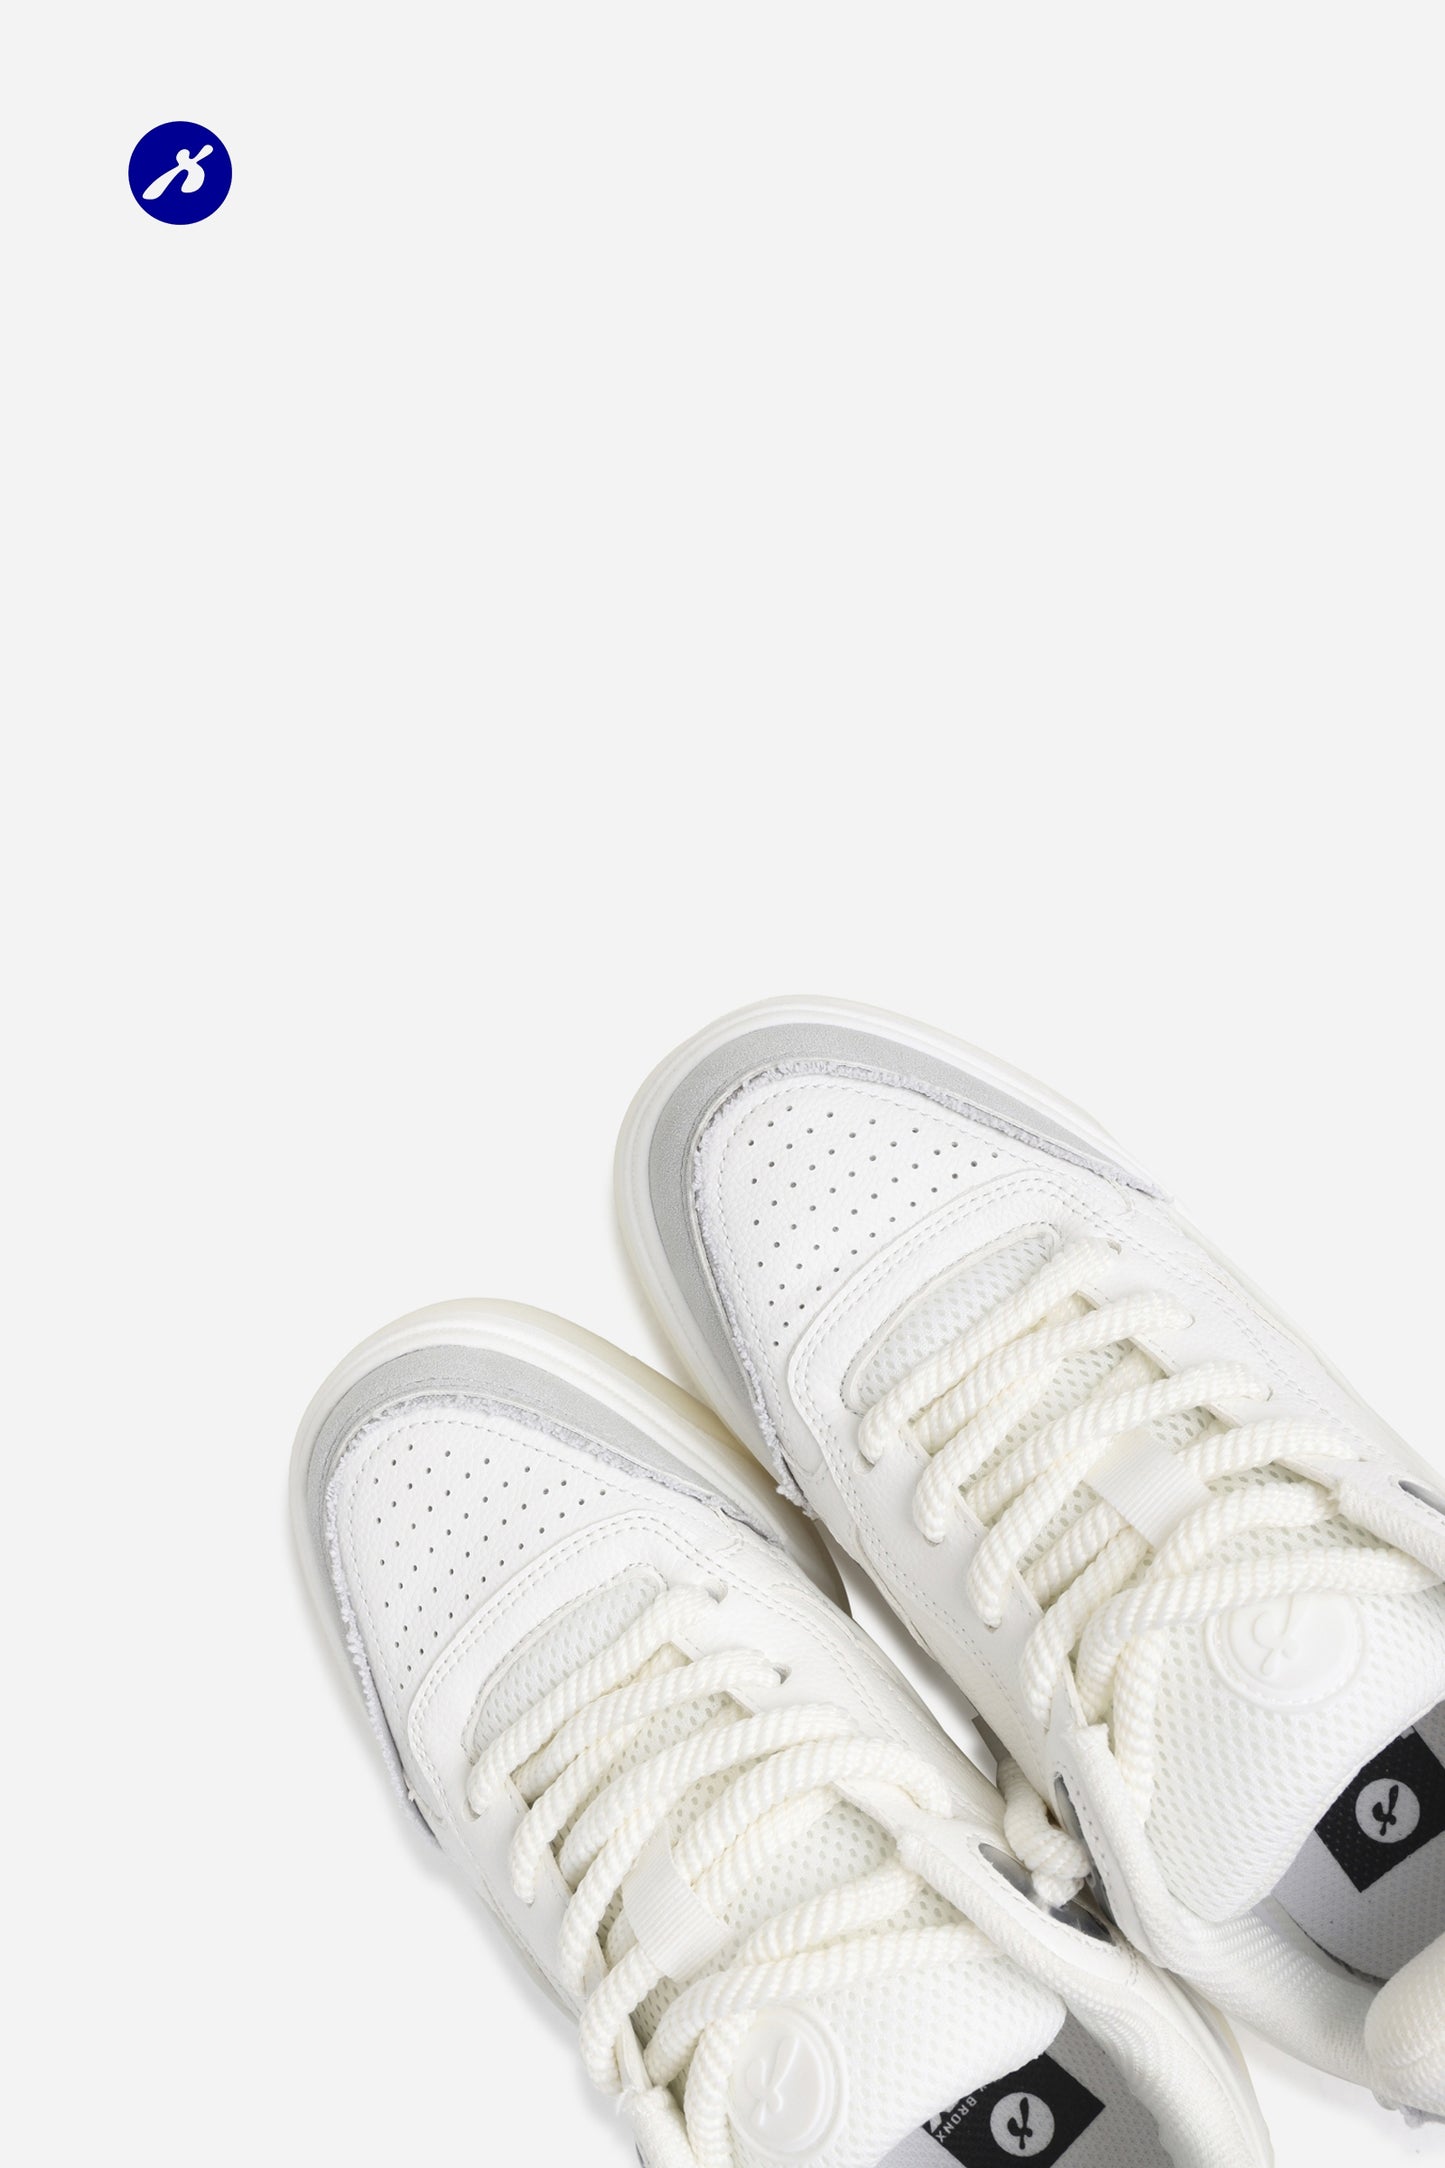 Sneaker Skat-err | off white/light grey